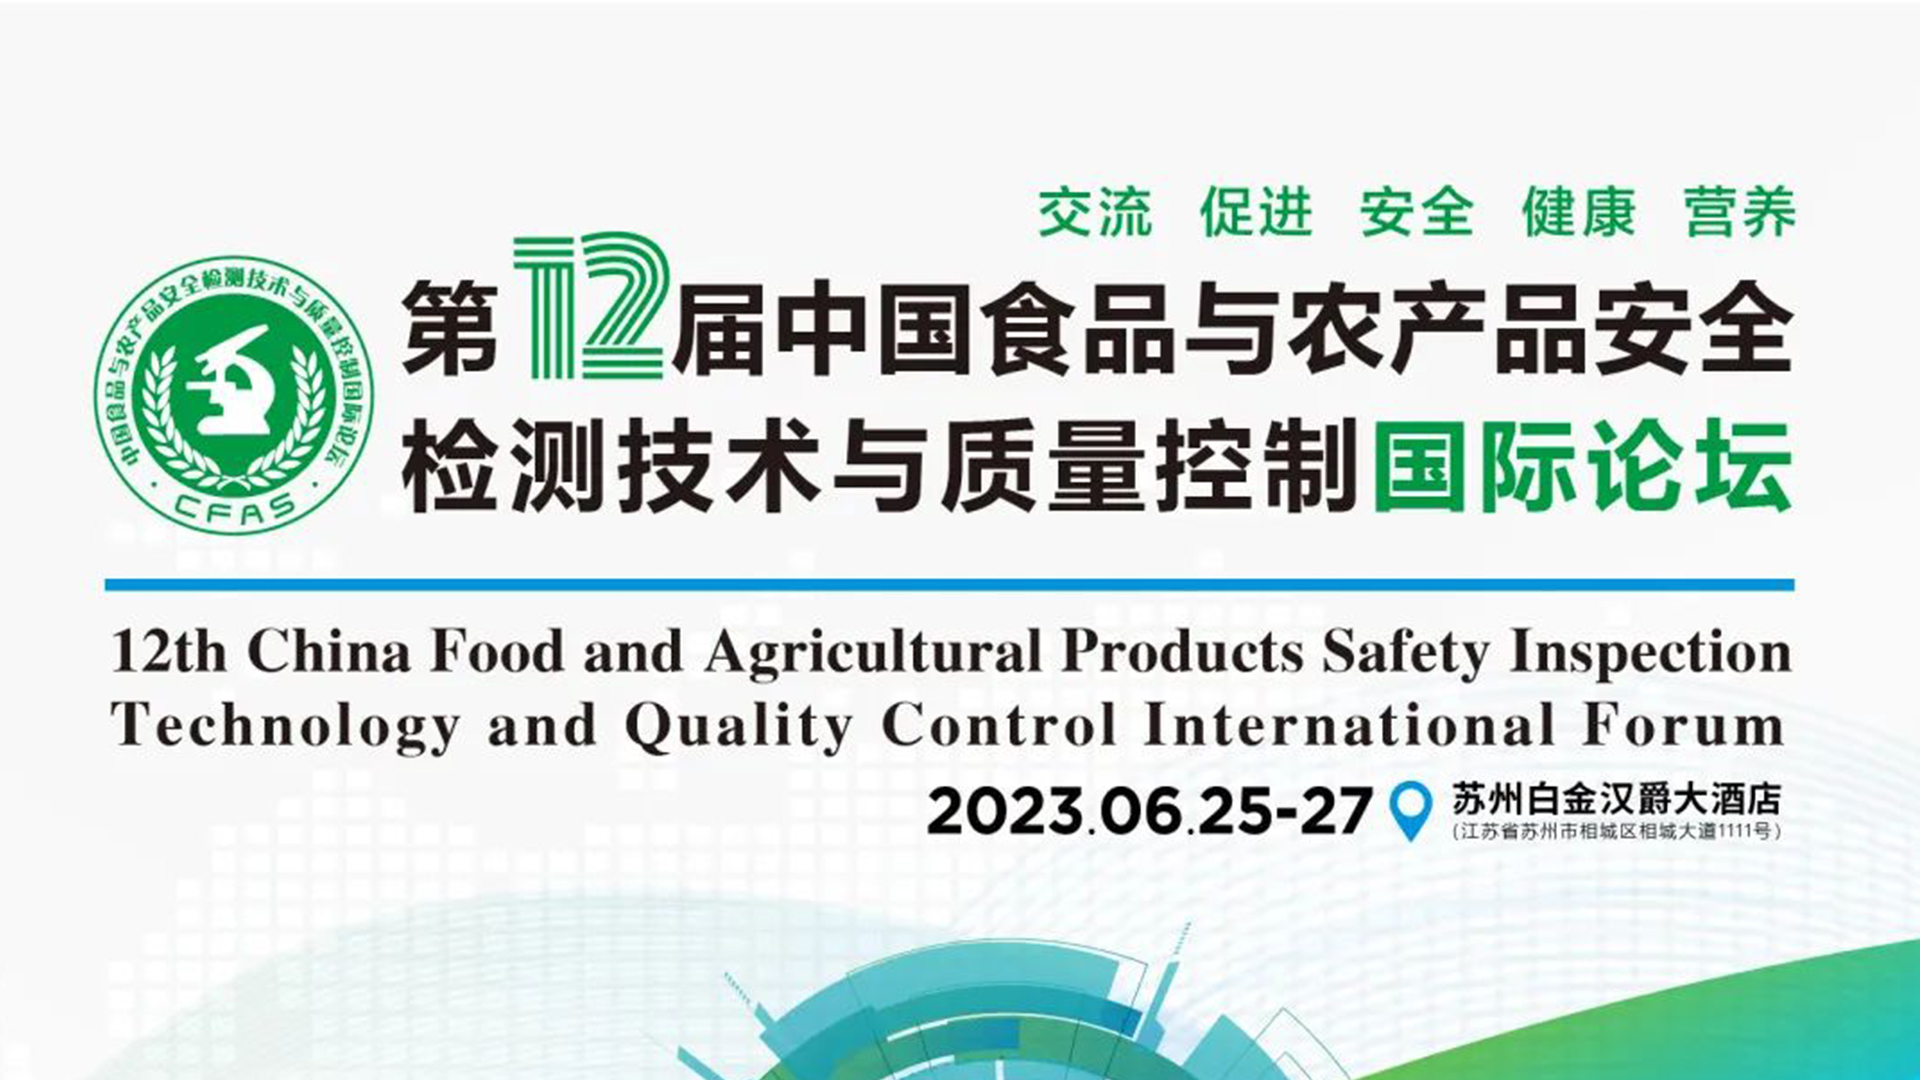 【动态】中科志康亮相食品与农产品安全领域高质量会议“CFAS 2023”！